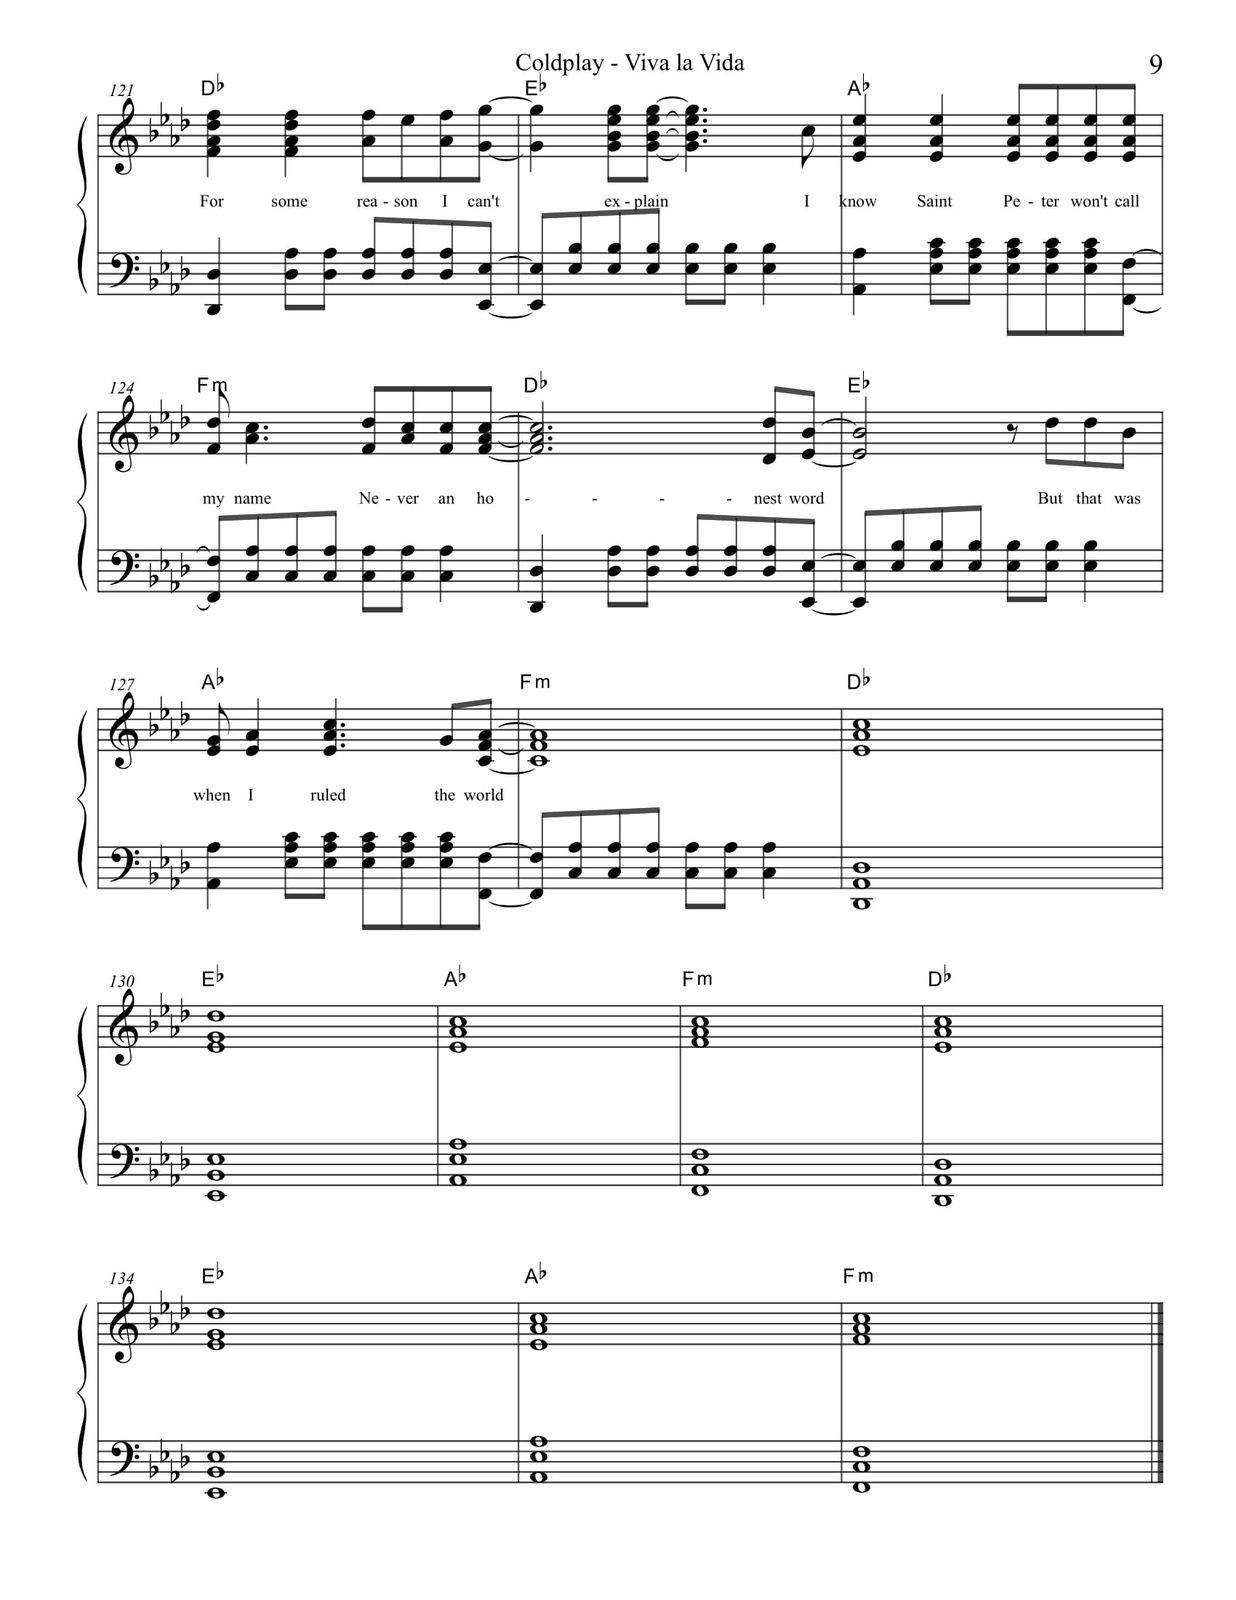 James Dyson Huelga congelador Partitura Para Piano "Viva La Vida" | Coldplay - Las Notas De Nana